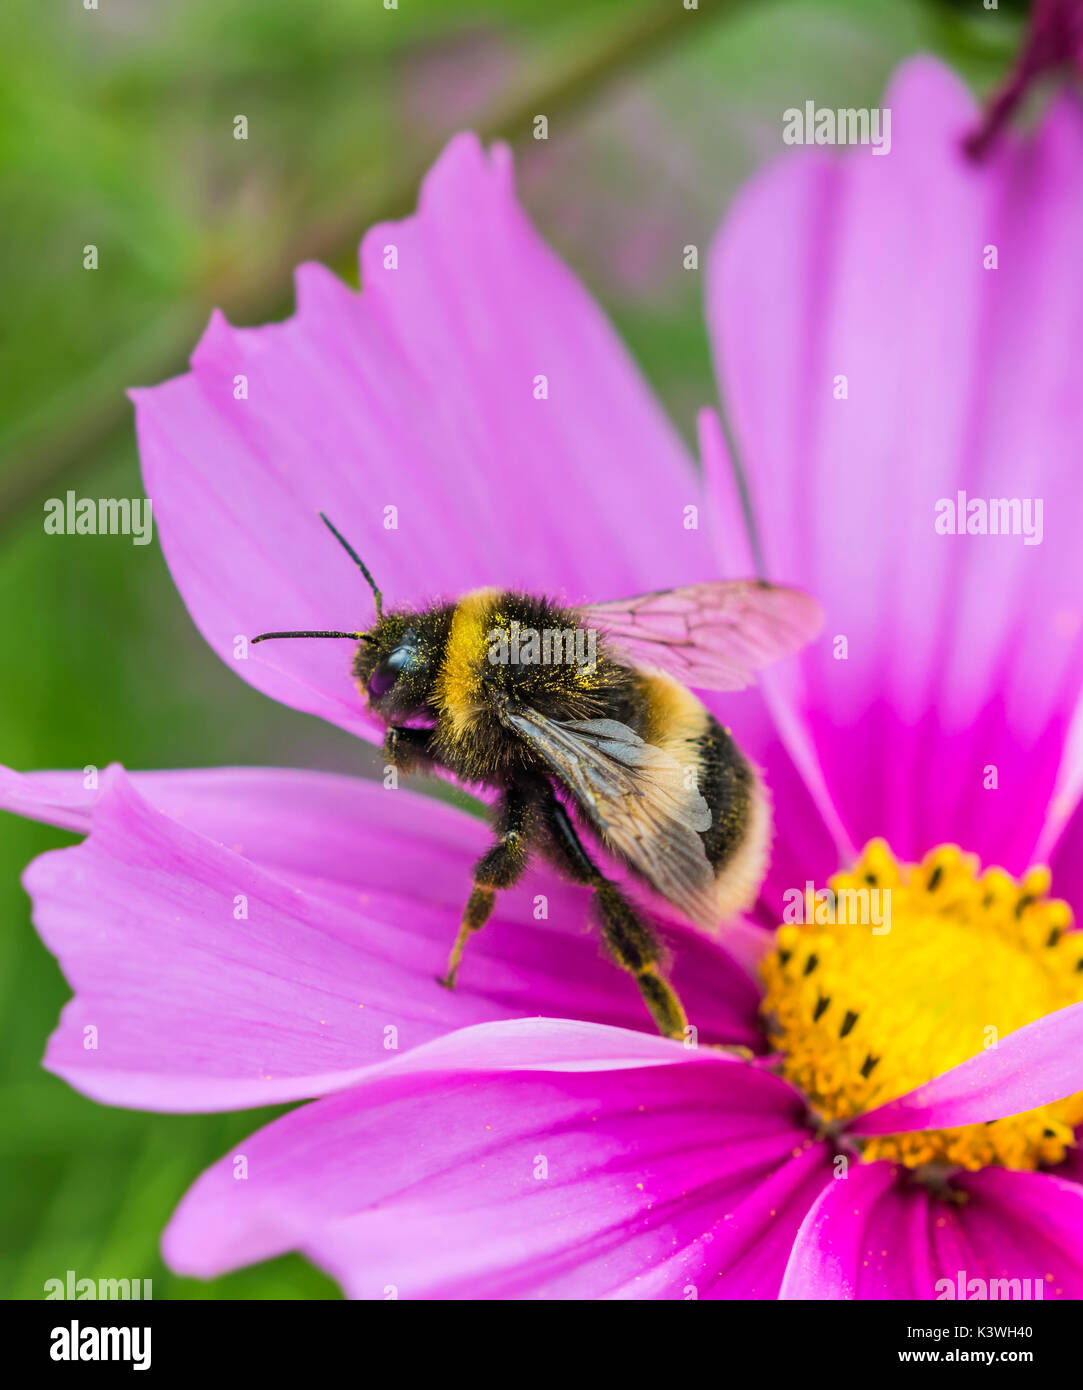 Buff Tailed Bumblebee (Bombus terrestris) su una rosa Cosmos bipinnatus fiore in estate nel West Sussex, Regno Unito. Bumblebee ritratto. Copia dello spazio. Foto Stock